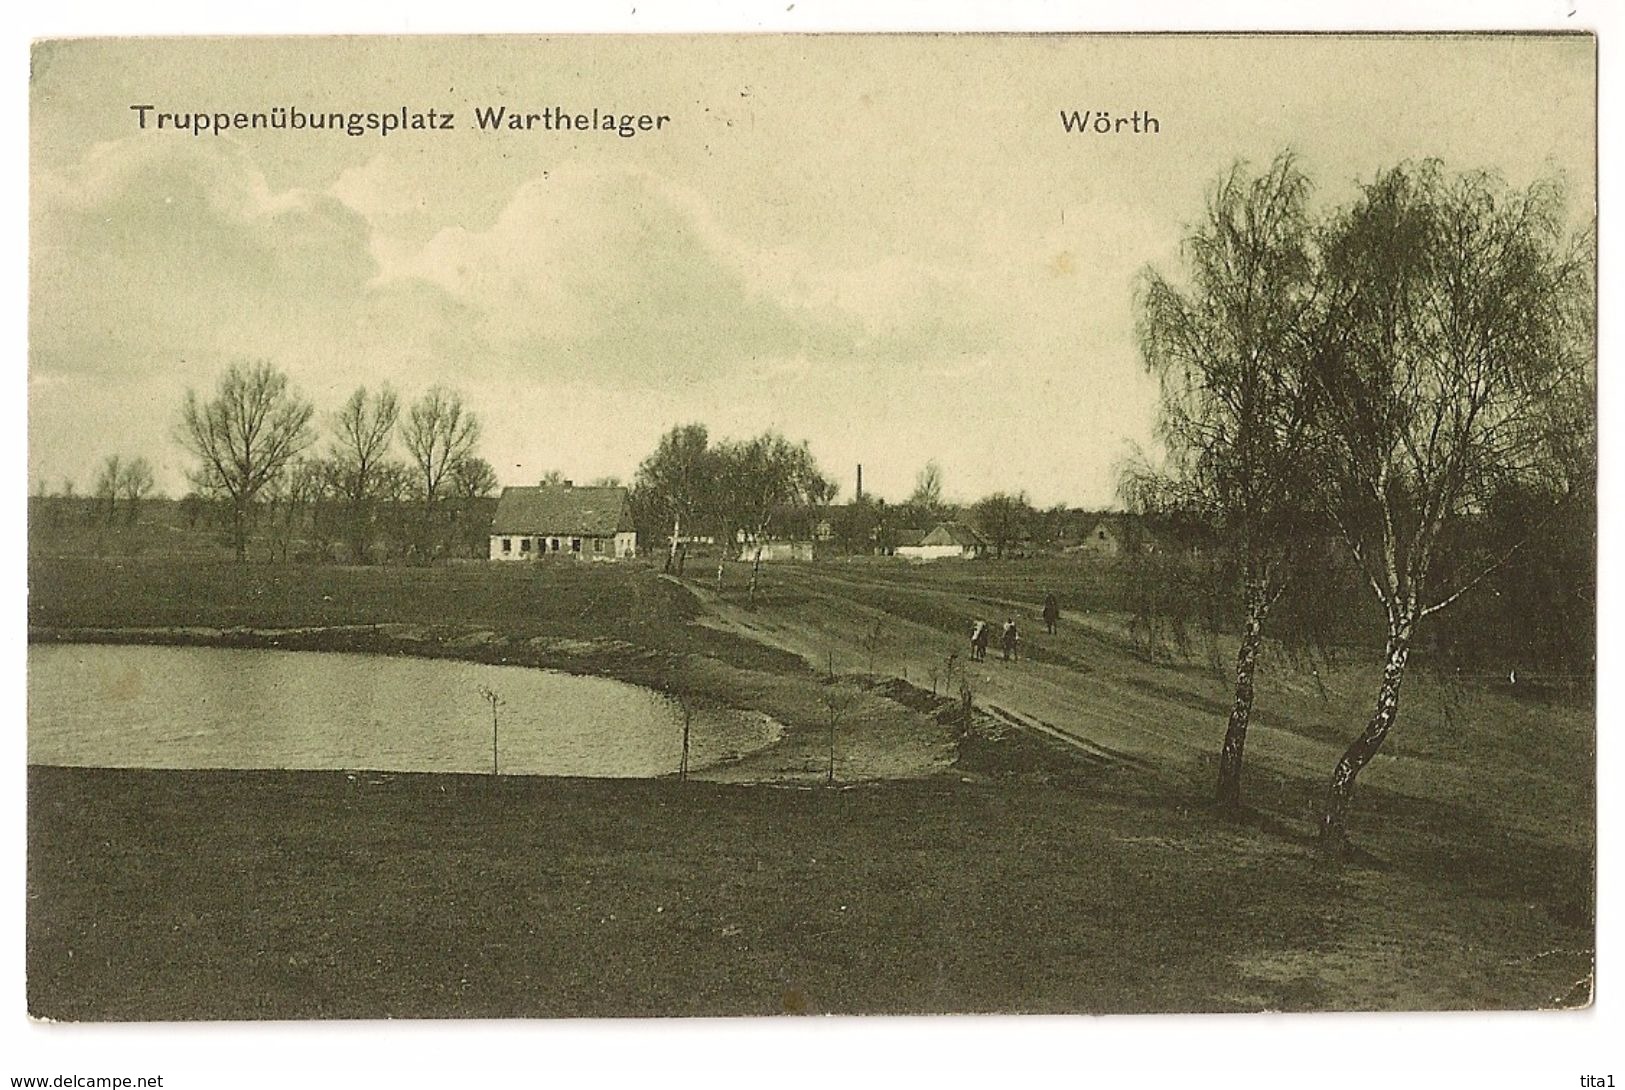 S6602 - Wörth - Truppenübungsplatz Warthelager - Woerth